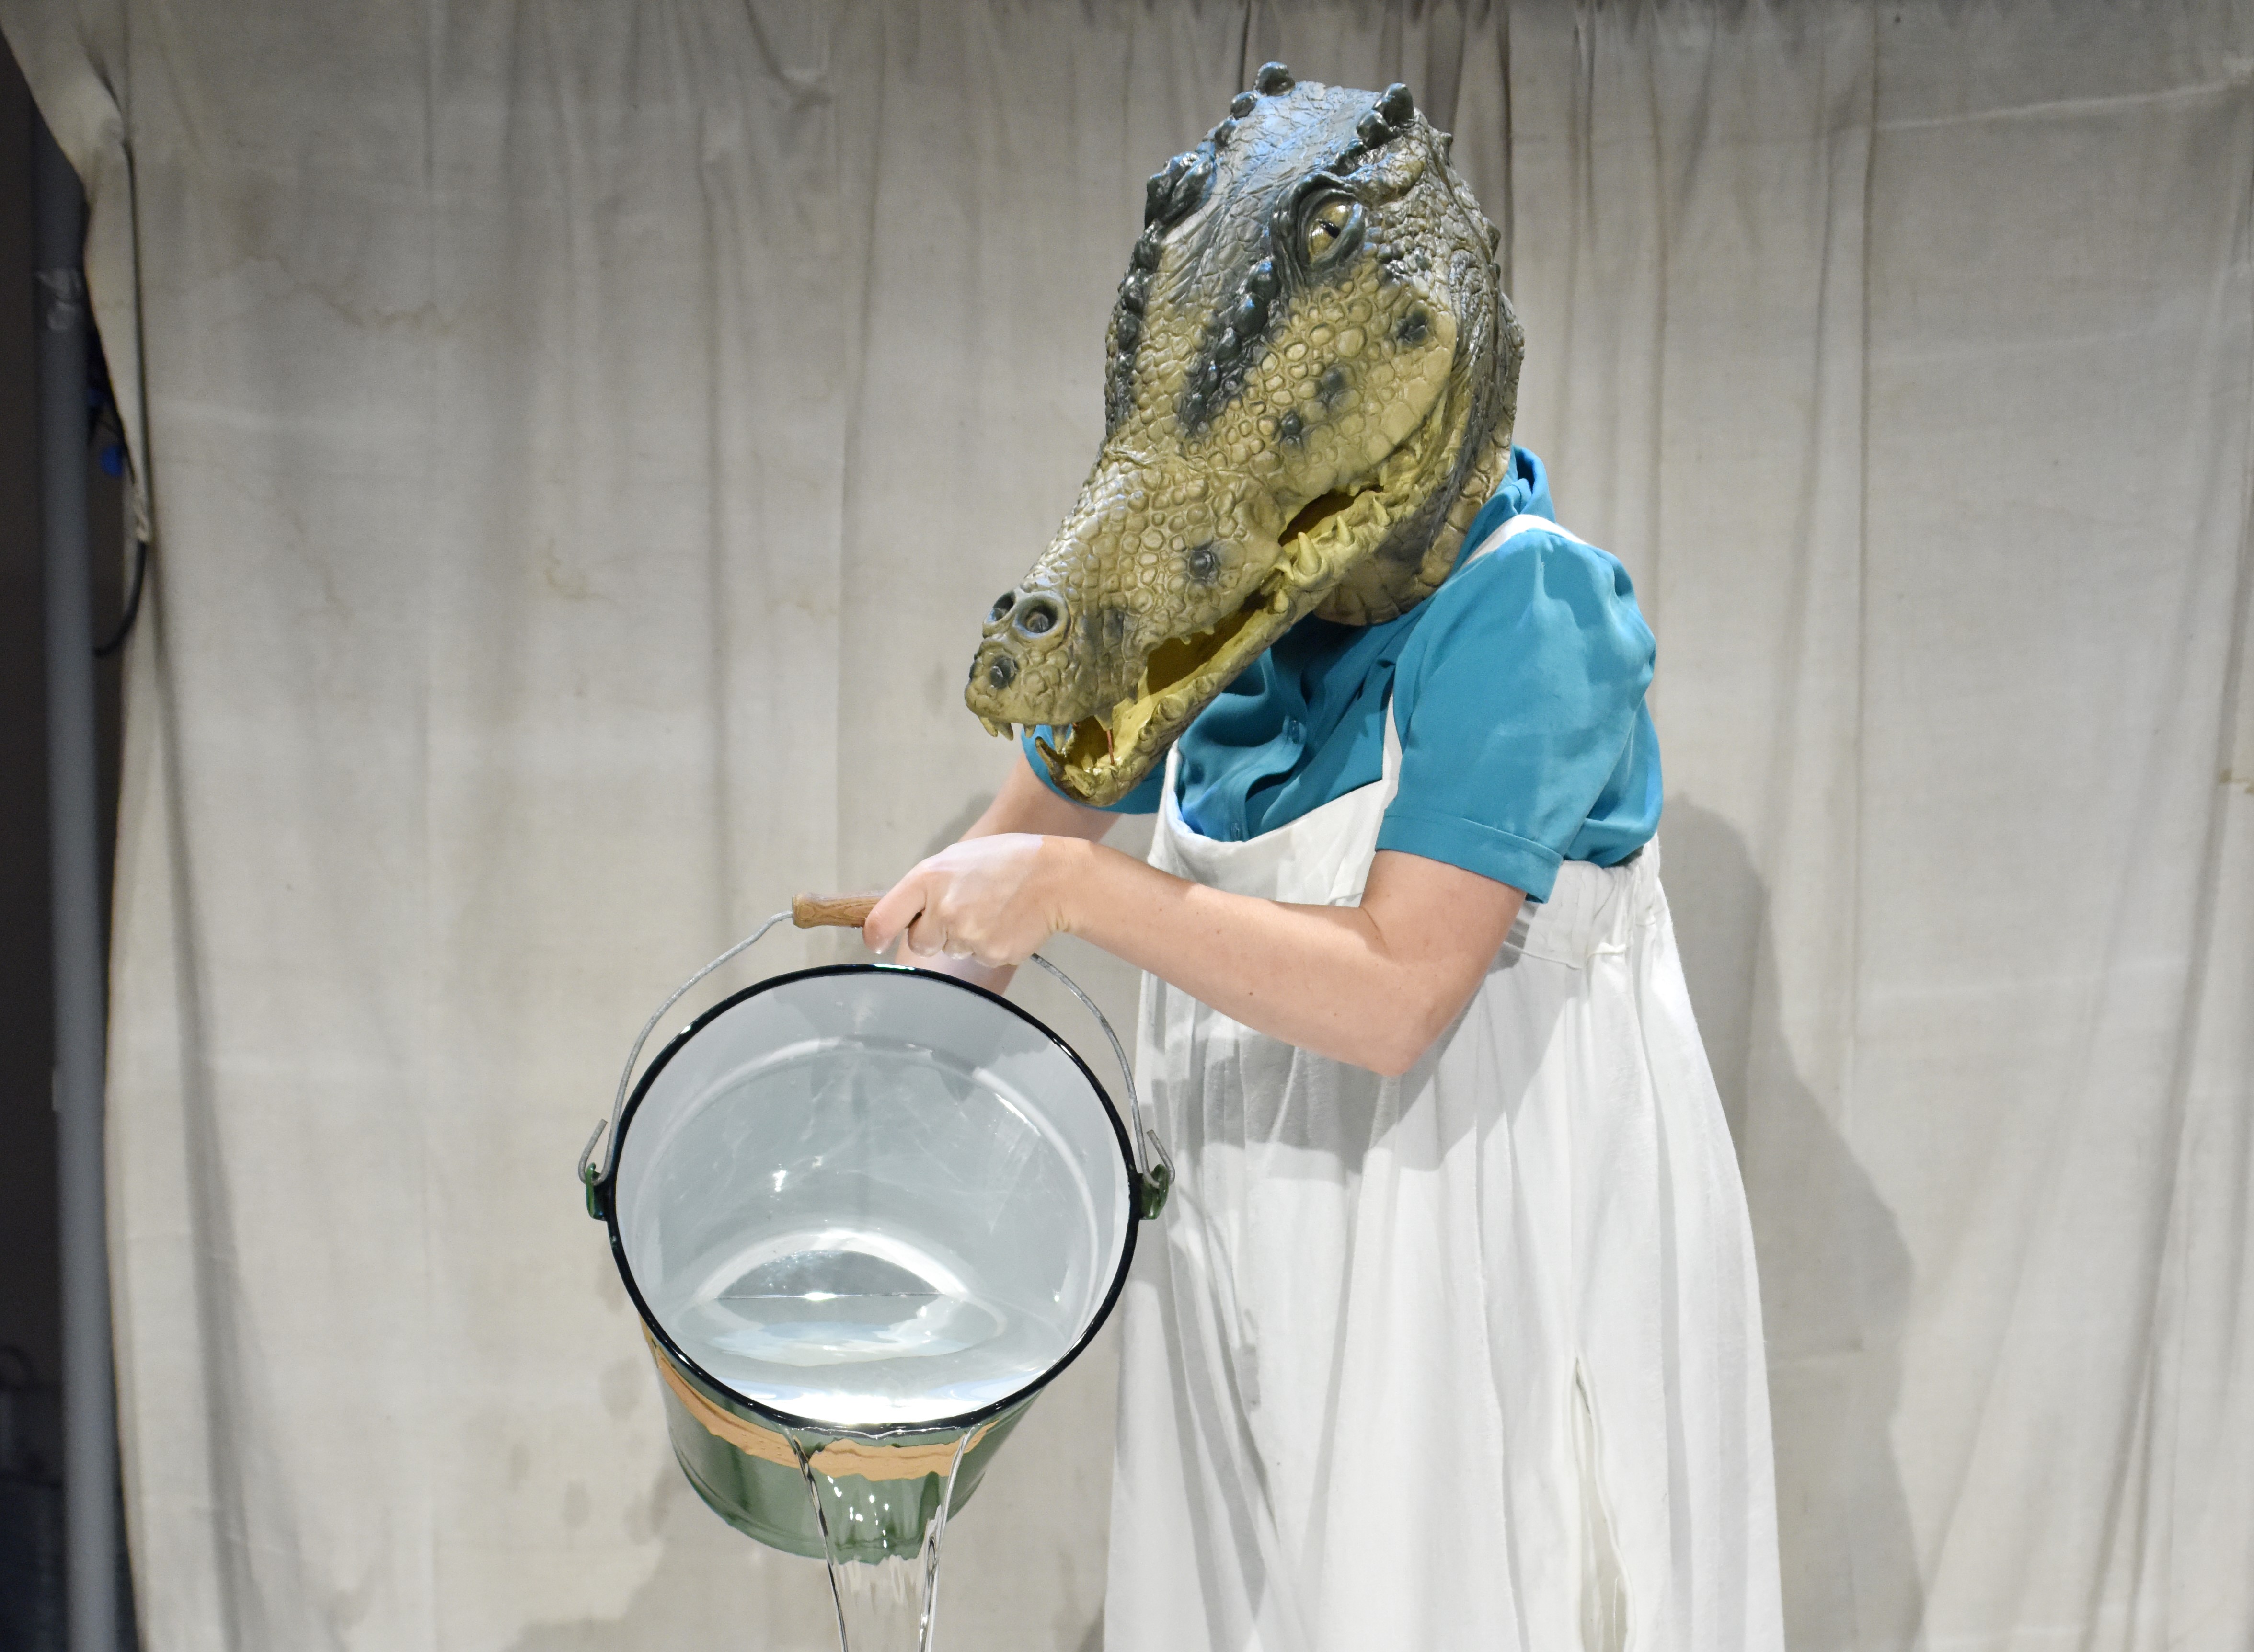 Puppenspielerin Ulrike Kley trägt eine echt aussehende Maske eines Krokodils mit spitzen Zähnen und langer Schnauze auf dem Kopf und schüttet einen Eimer voll Wasser auf die Bühne.